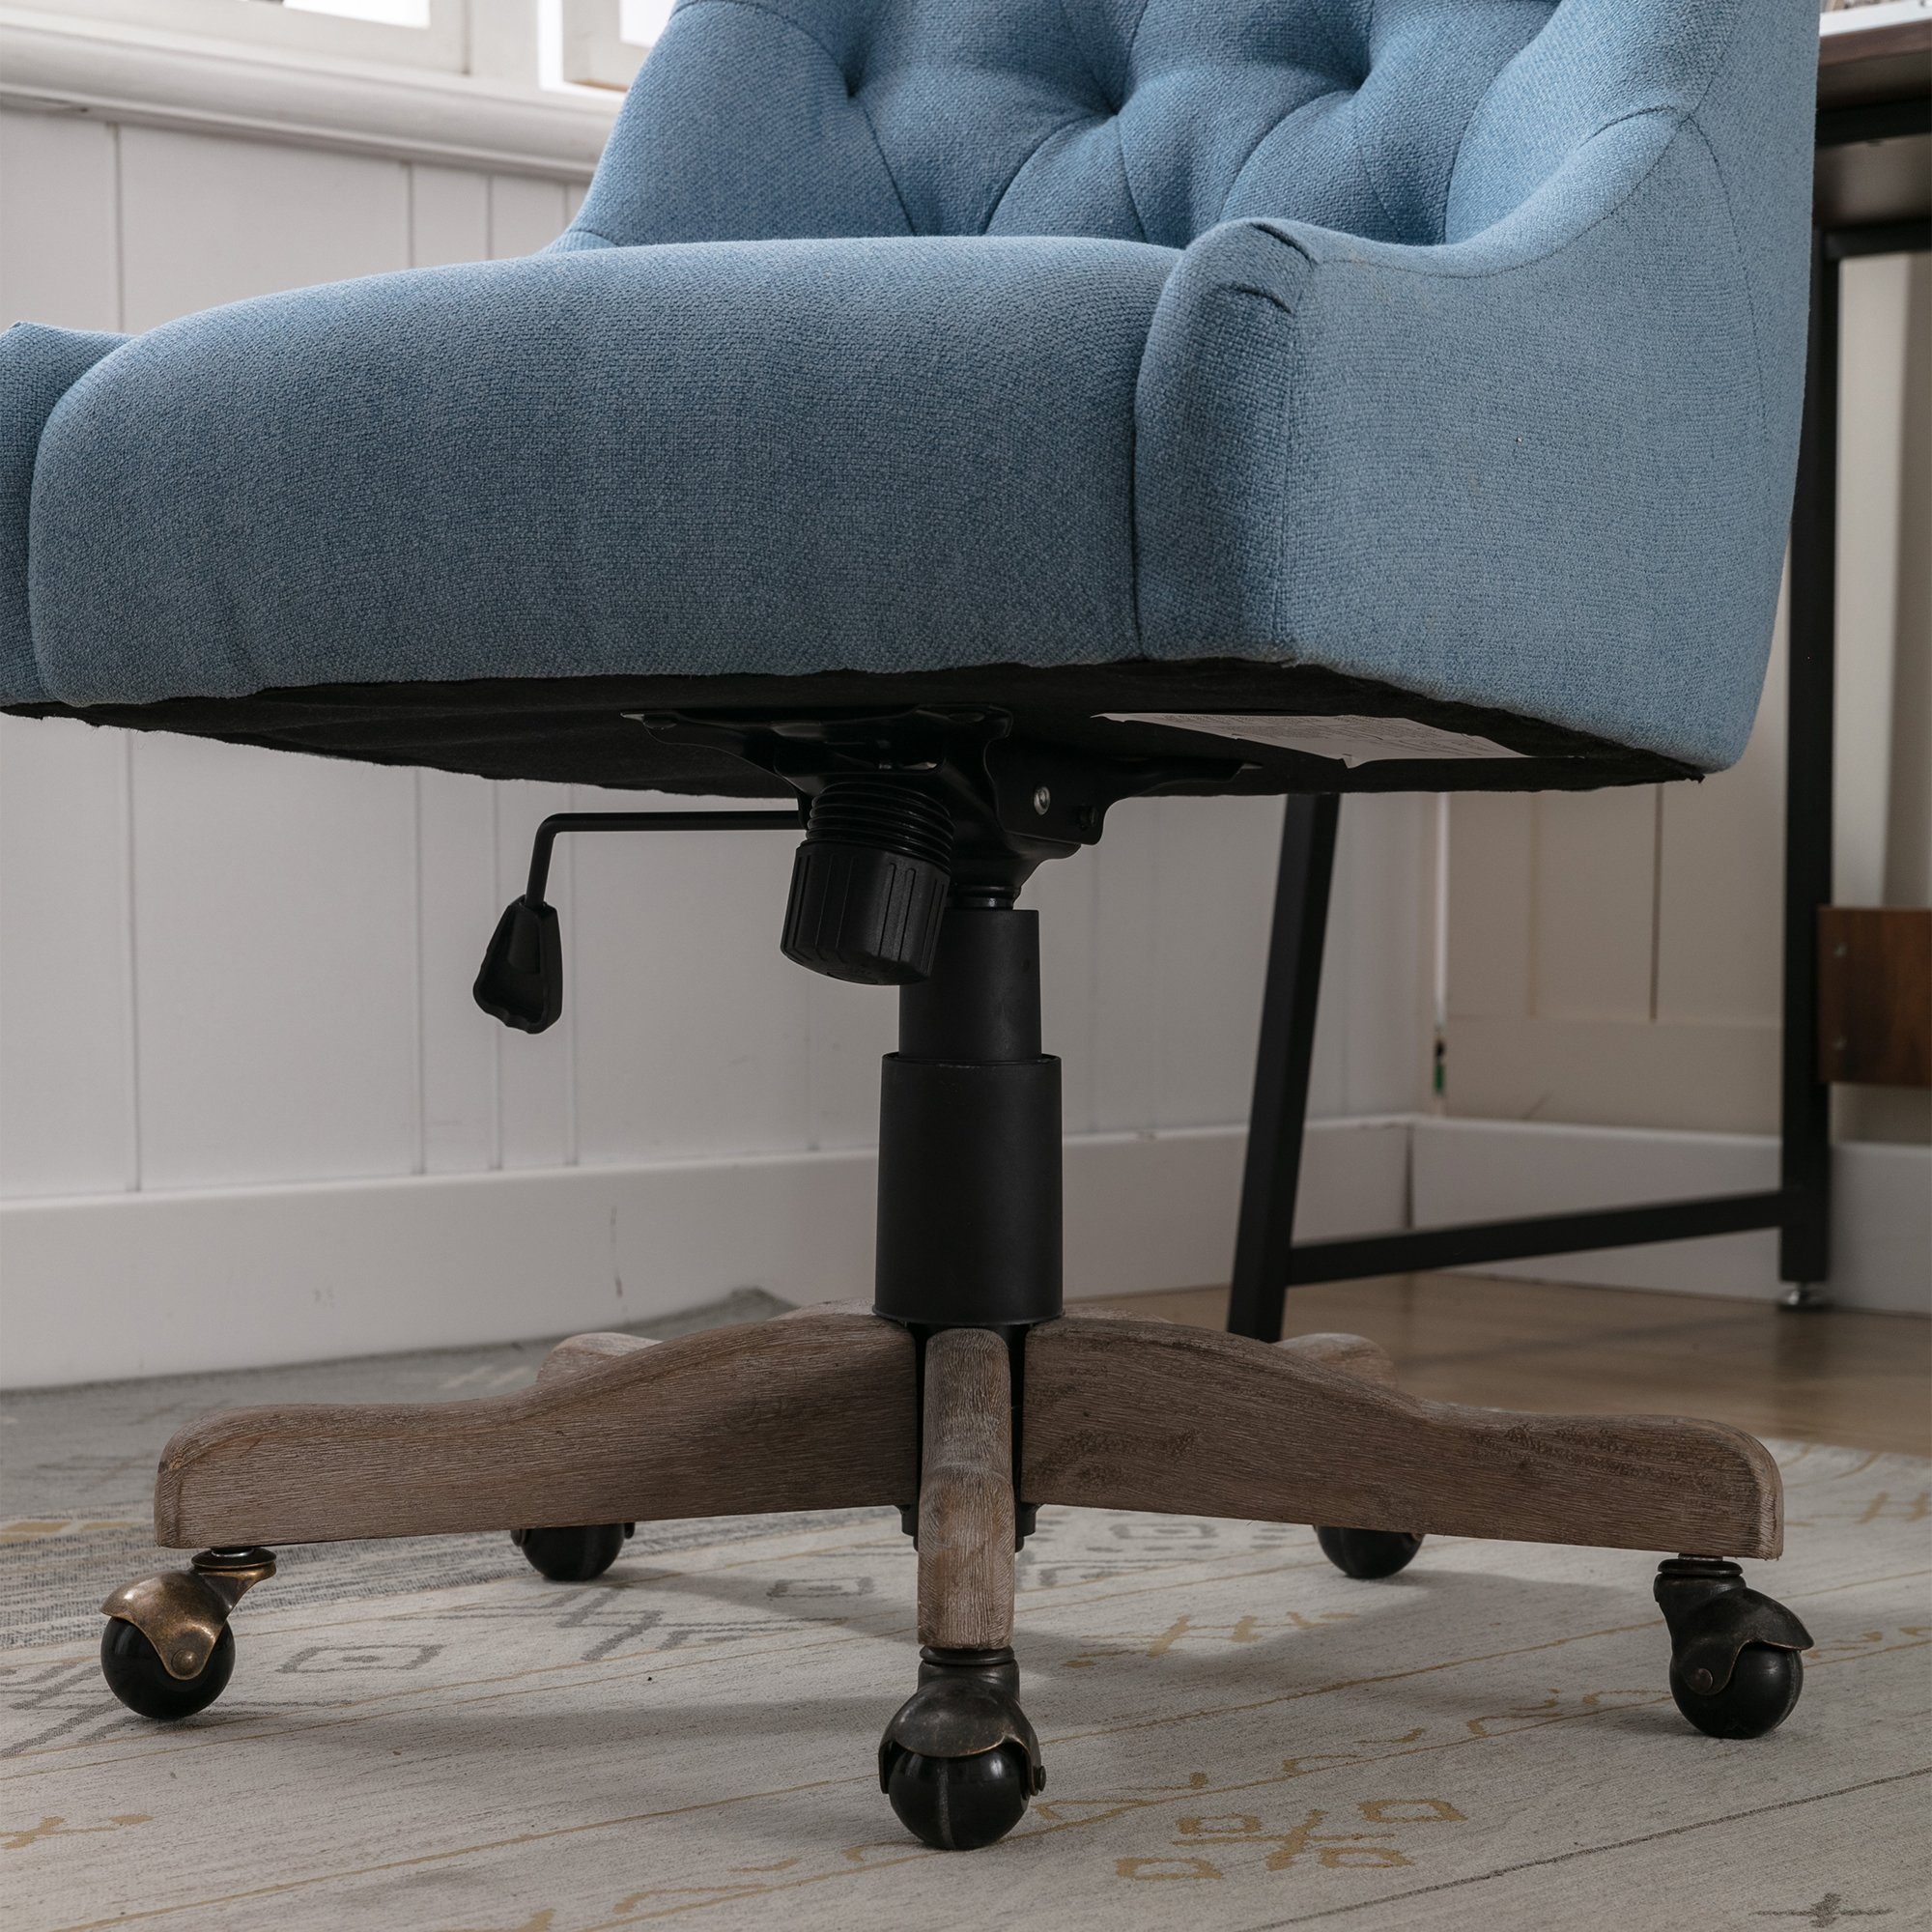 OKWISH Drehstuhl (mit Bürostuhl für blau Freizeit-Bürostuhl Wohnzimmer), Schalensitz Chefsessel Schreibtischstuhl Moderne